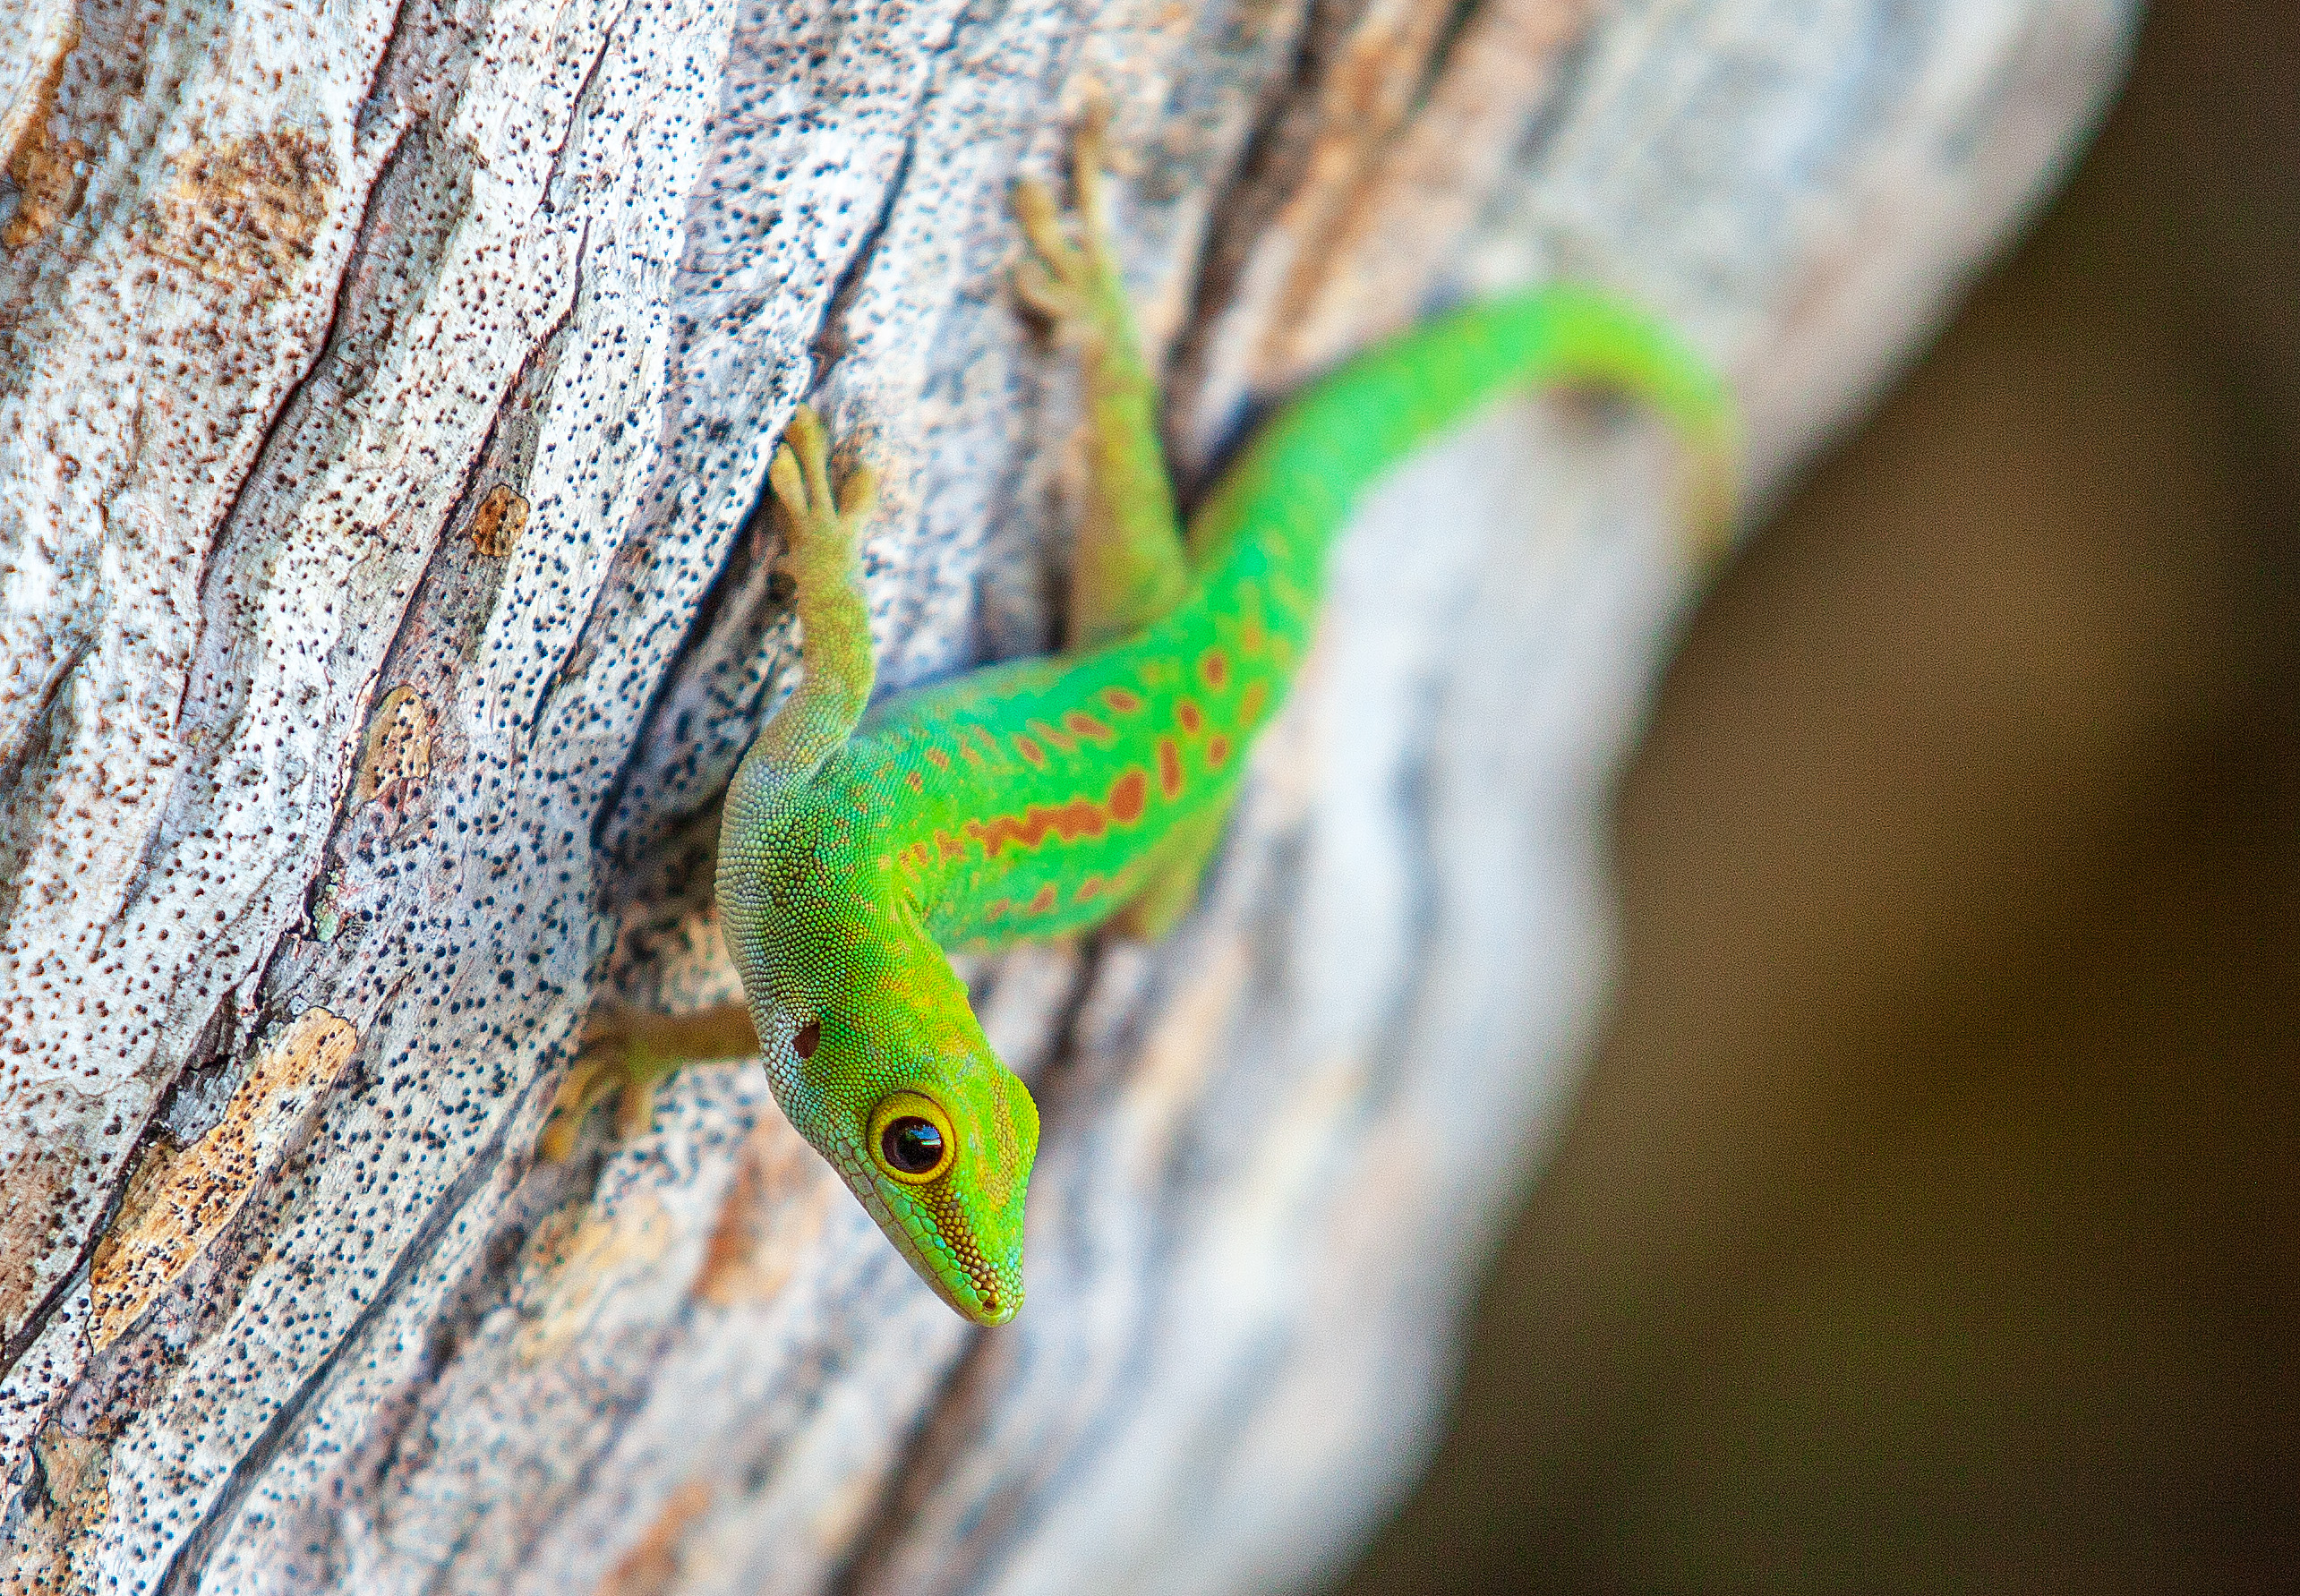 Madagascar giant day gecko size